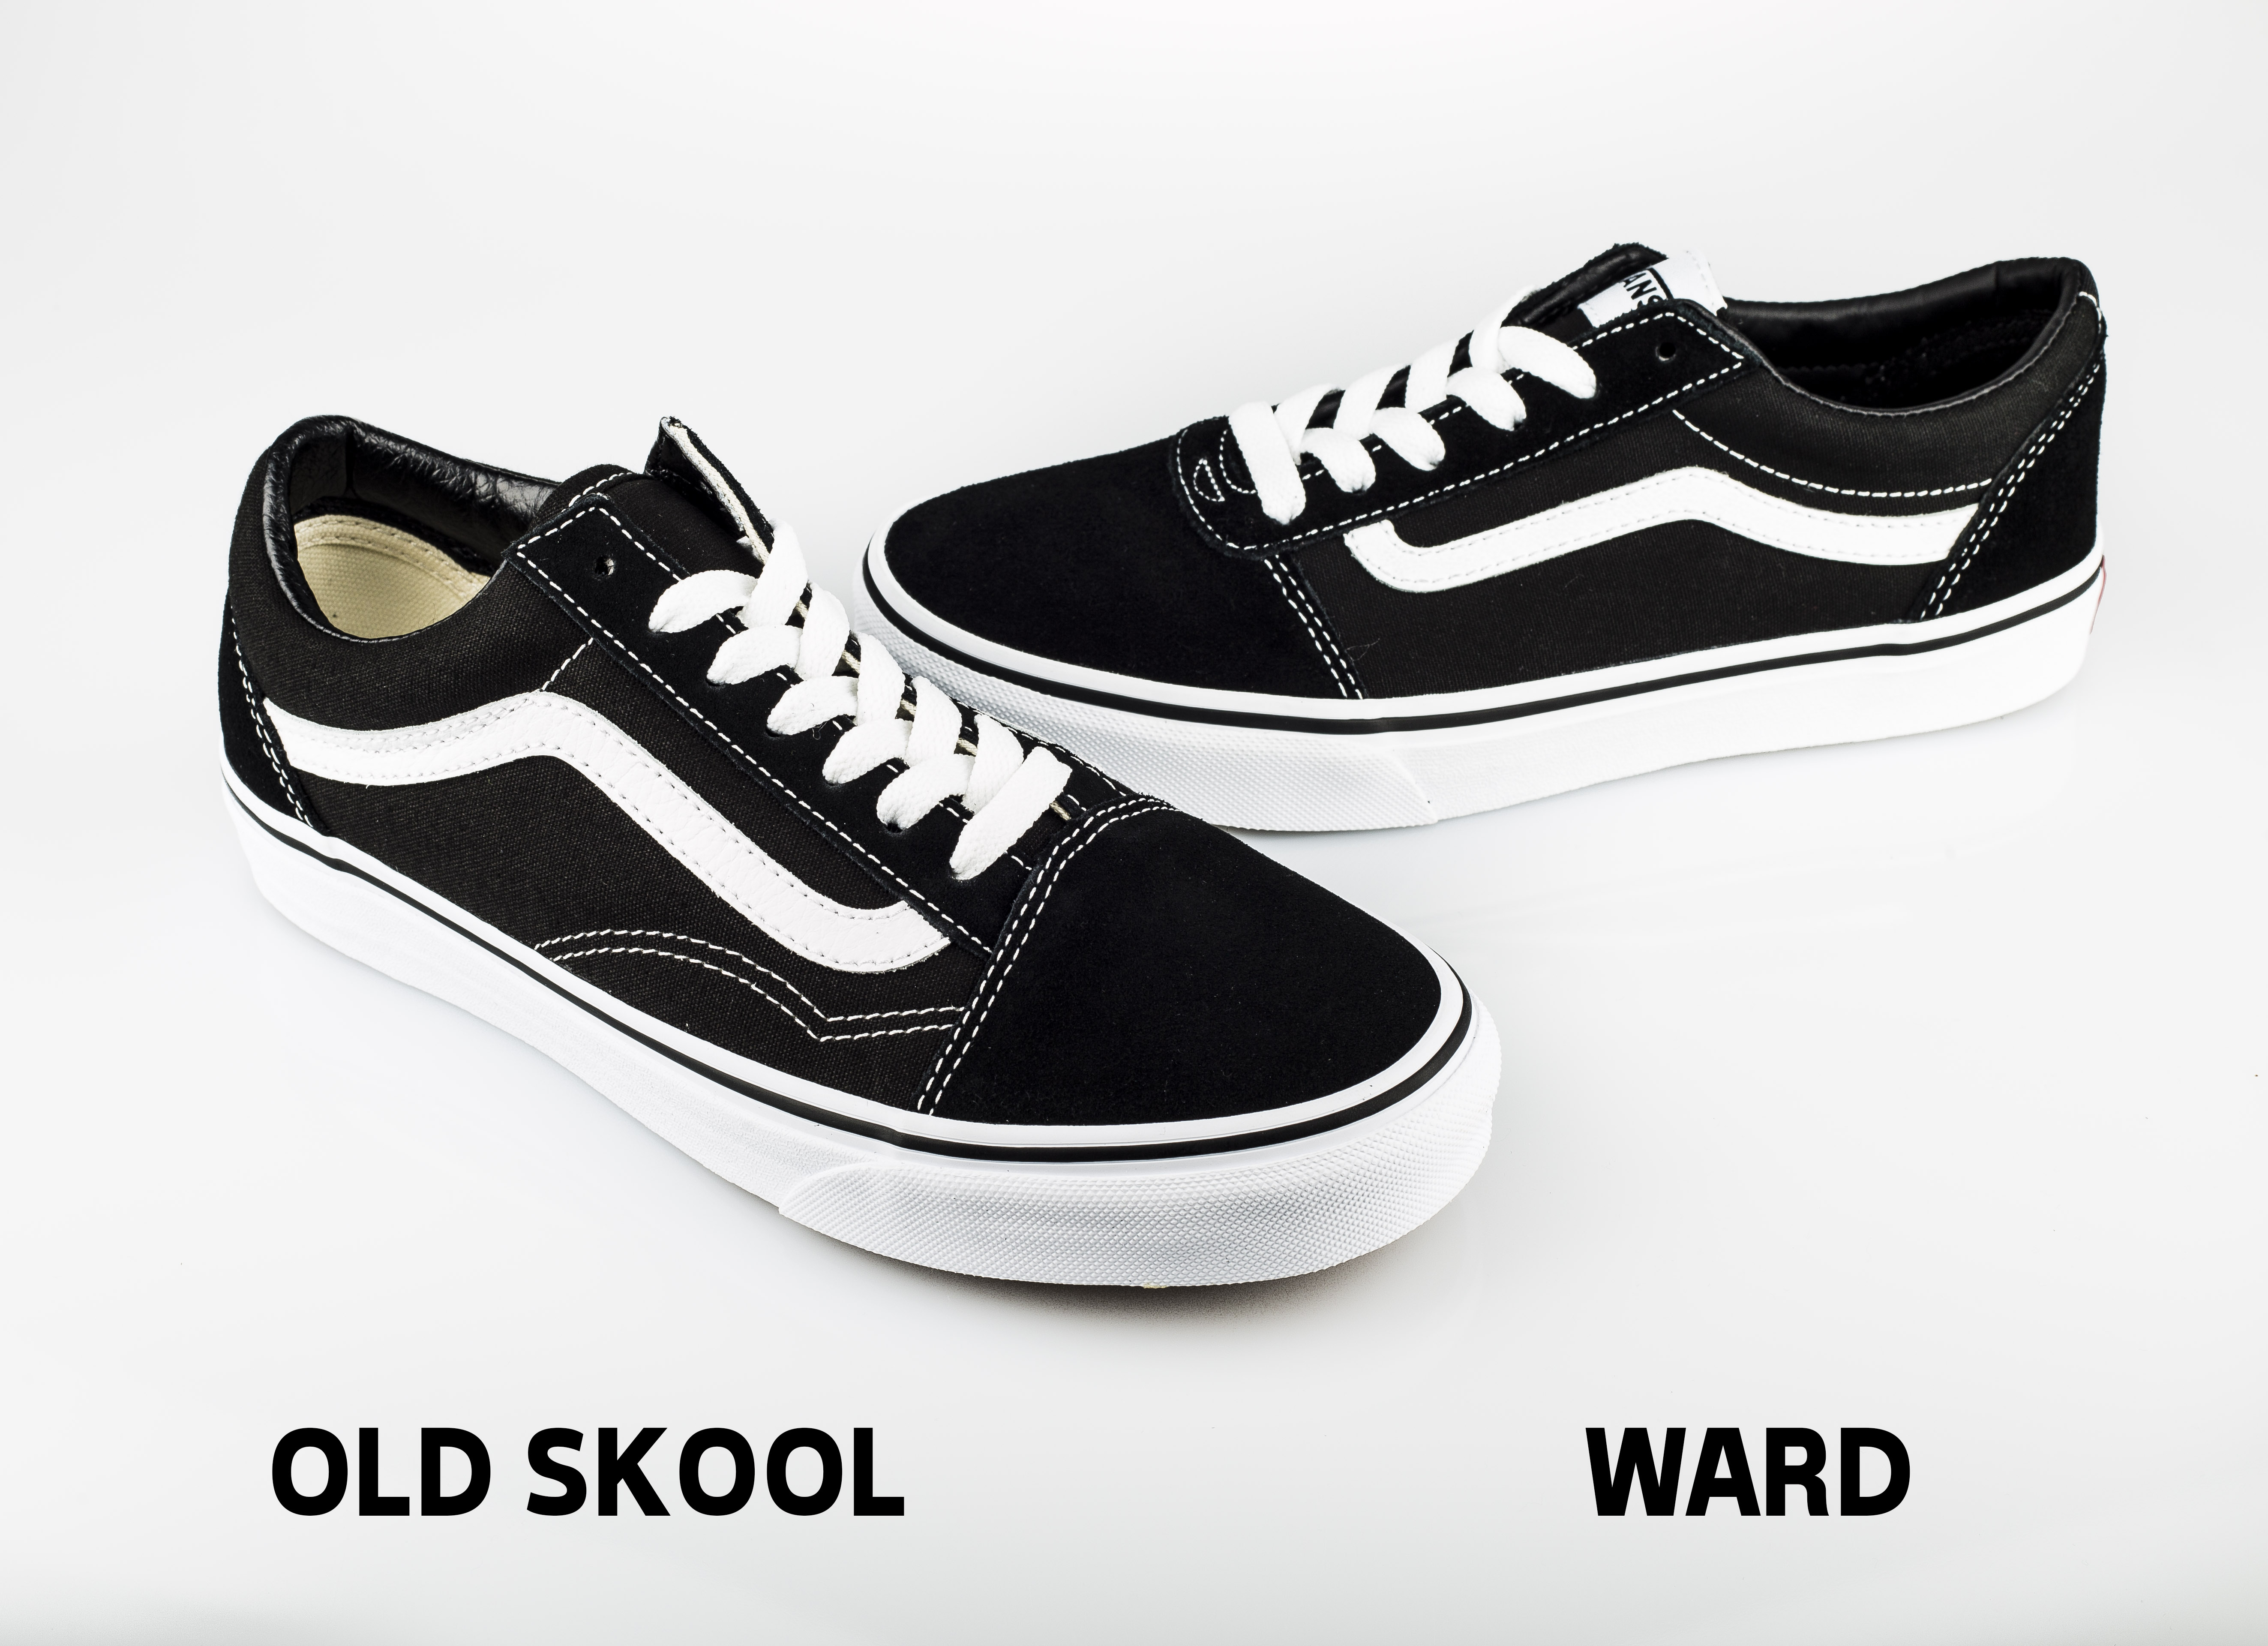 vans ward lo vs old skool